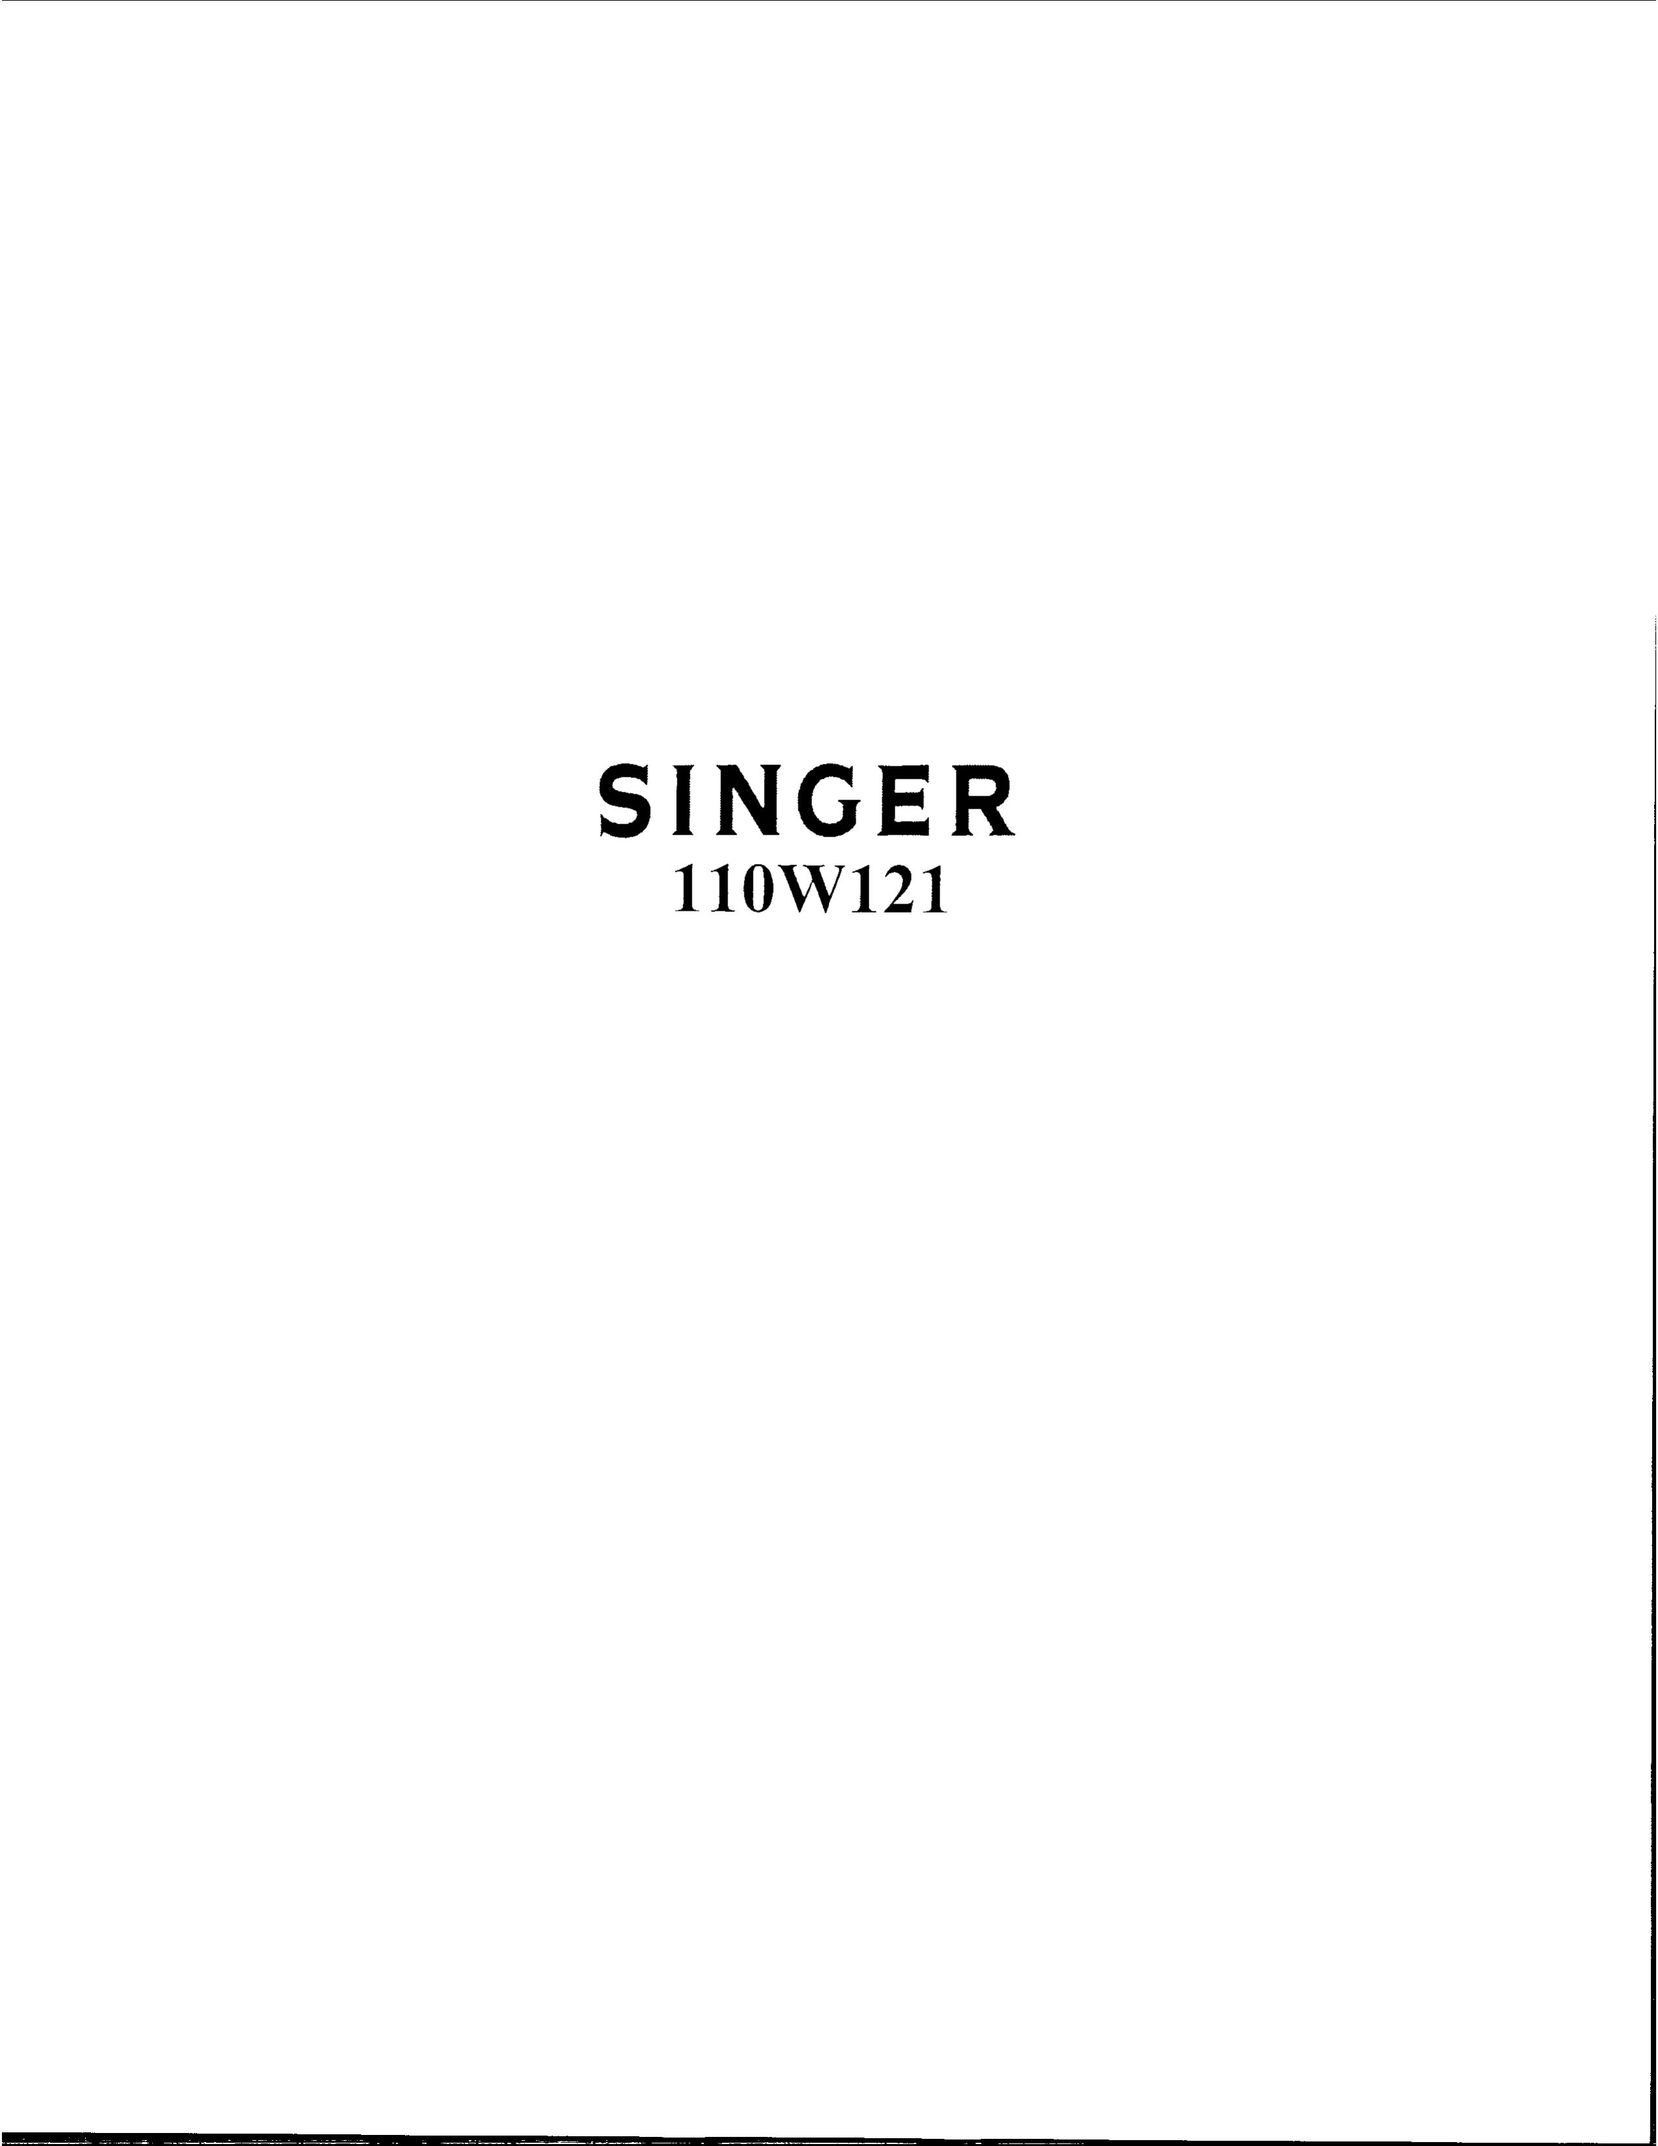 Singer 110W121 Sewing Machine User Manual